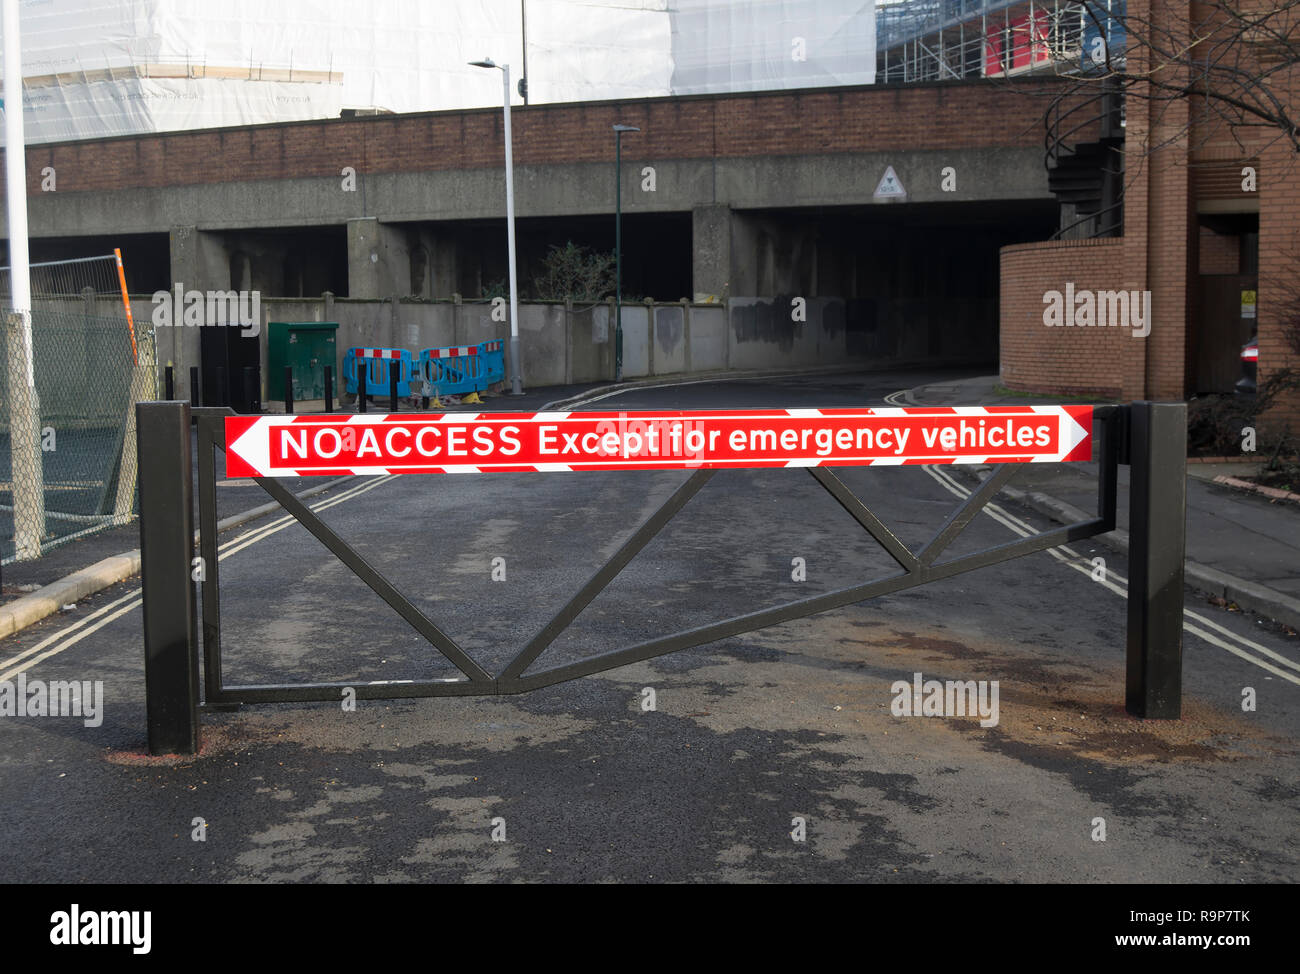 Le rouge et le blanc pas d'accès à l'exception des véhicules d'urgence signe sur un obstacle routier à Twickenham, Middlesex, Angleterre Banque D'Images